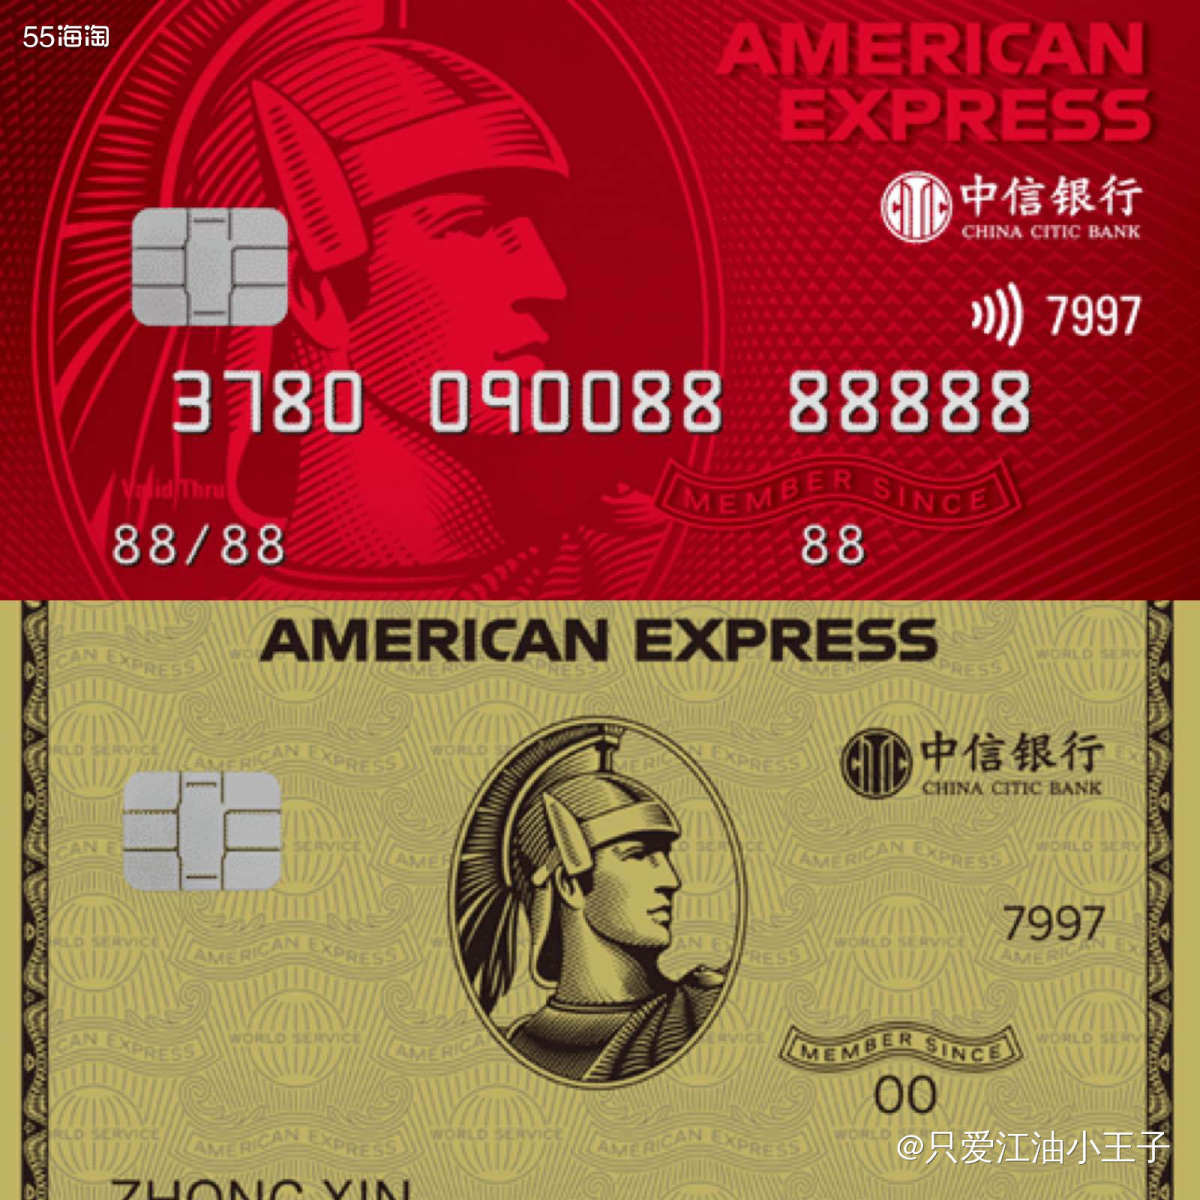 使用中信银行美国运通信用卡,最高可领3330返利!,海淘攻略